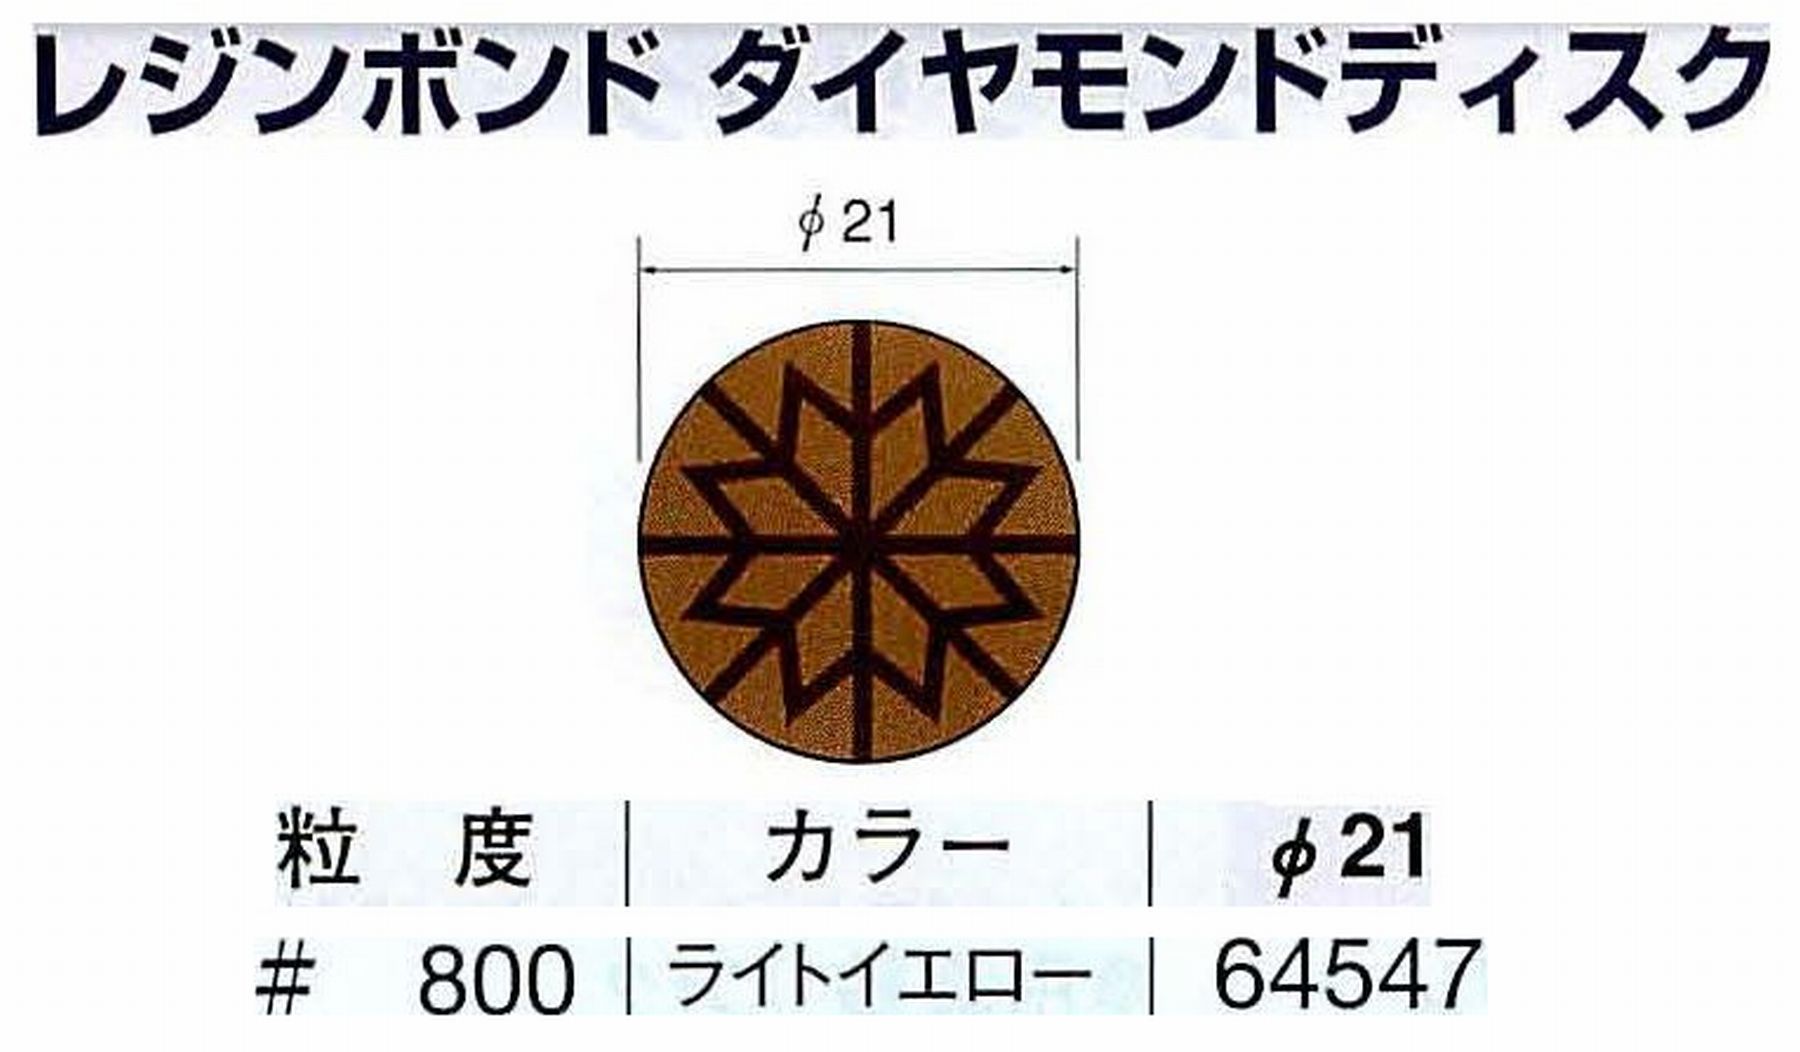 ナカニシ/NAKANISHI アングルグラインダ(電動・エアー) アングルアタッチメント専用工具 レジンボンド ダイヤモンドディスク(パターンタイプ) 64547